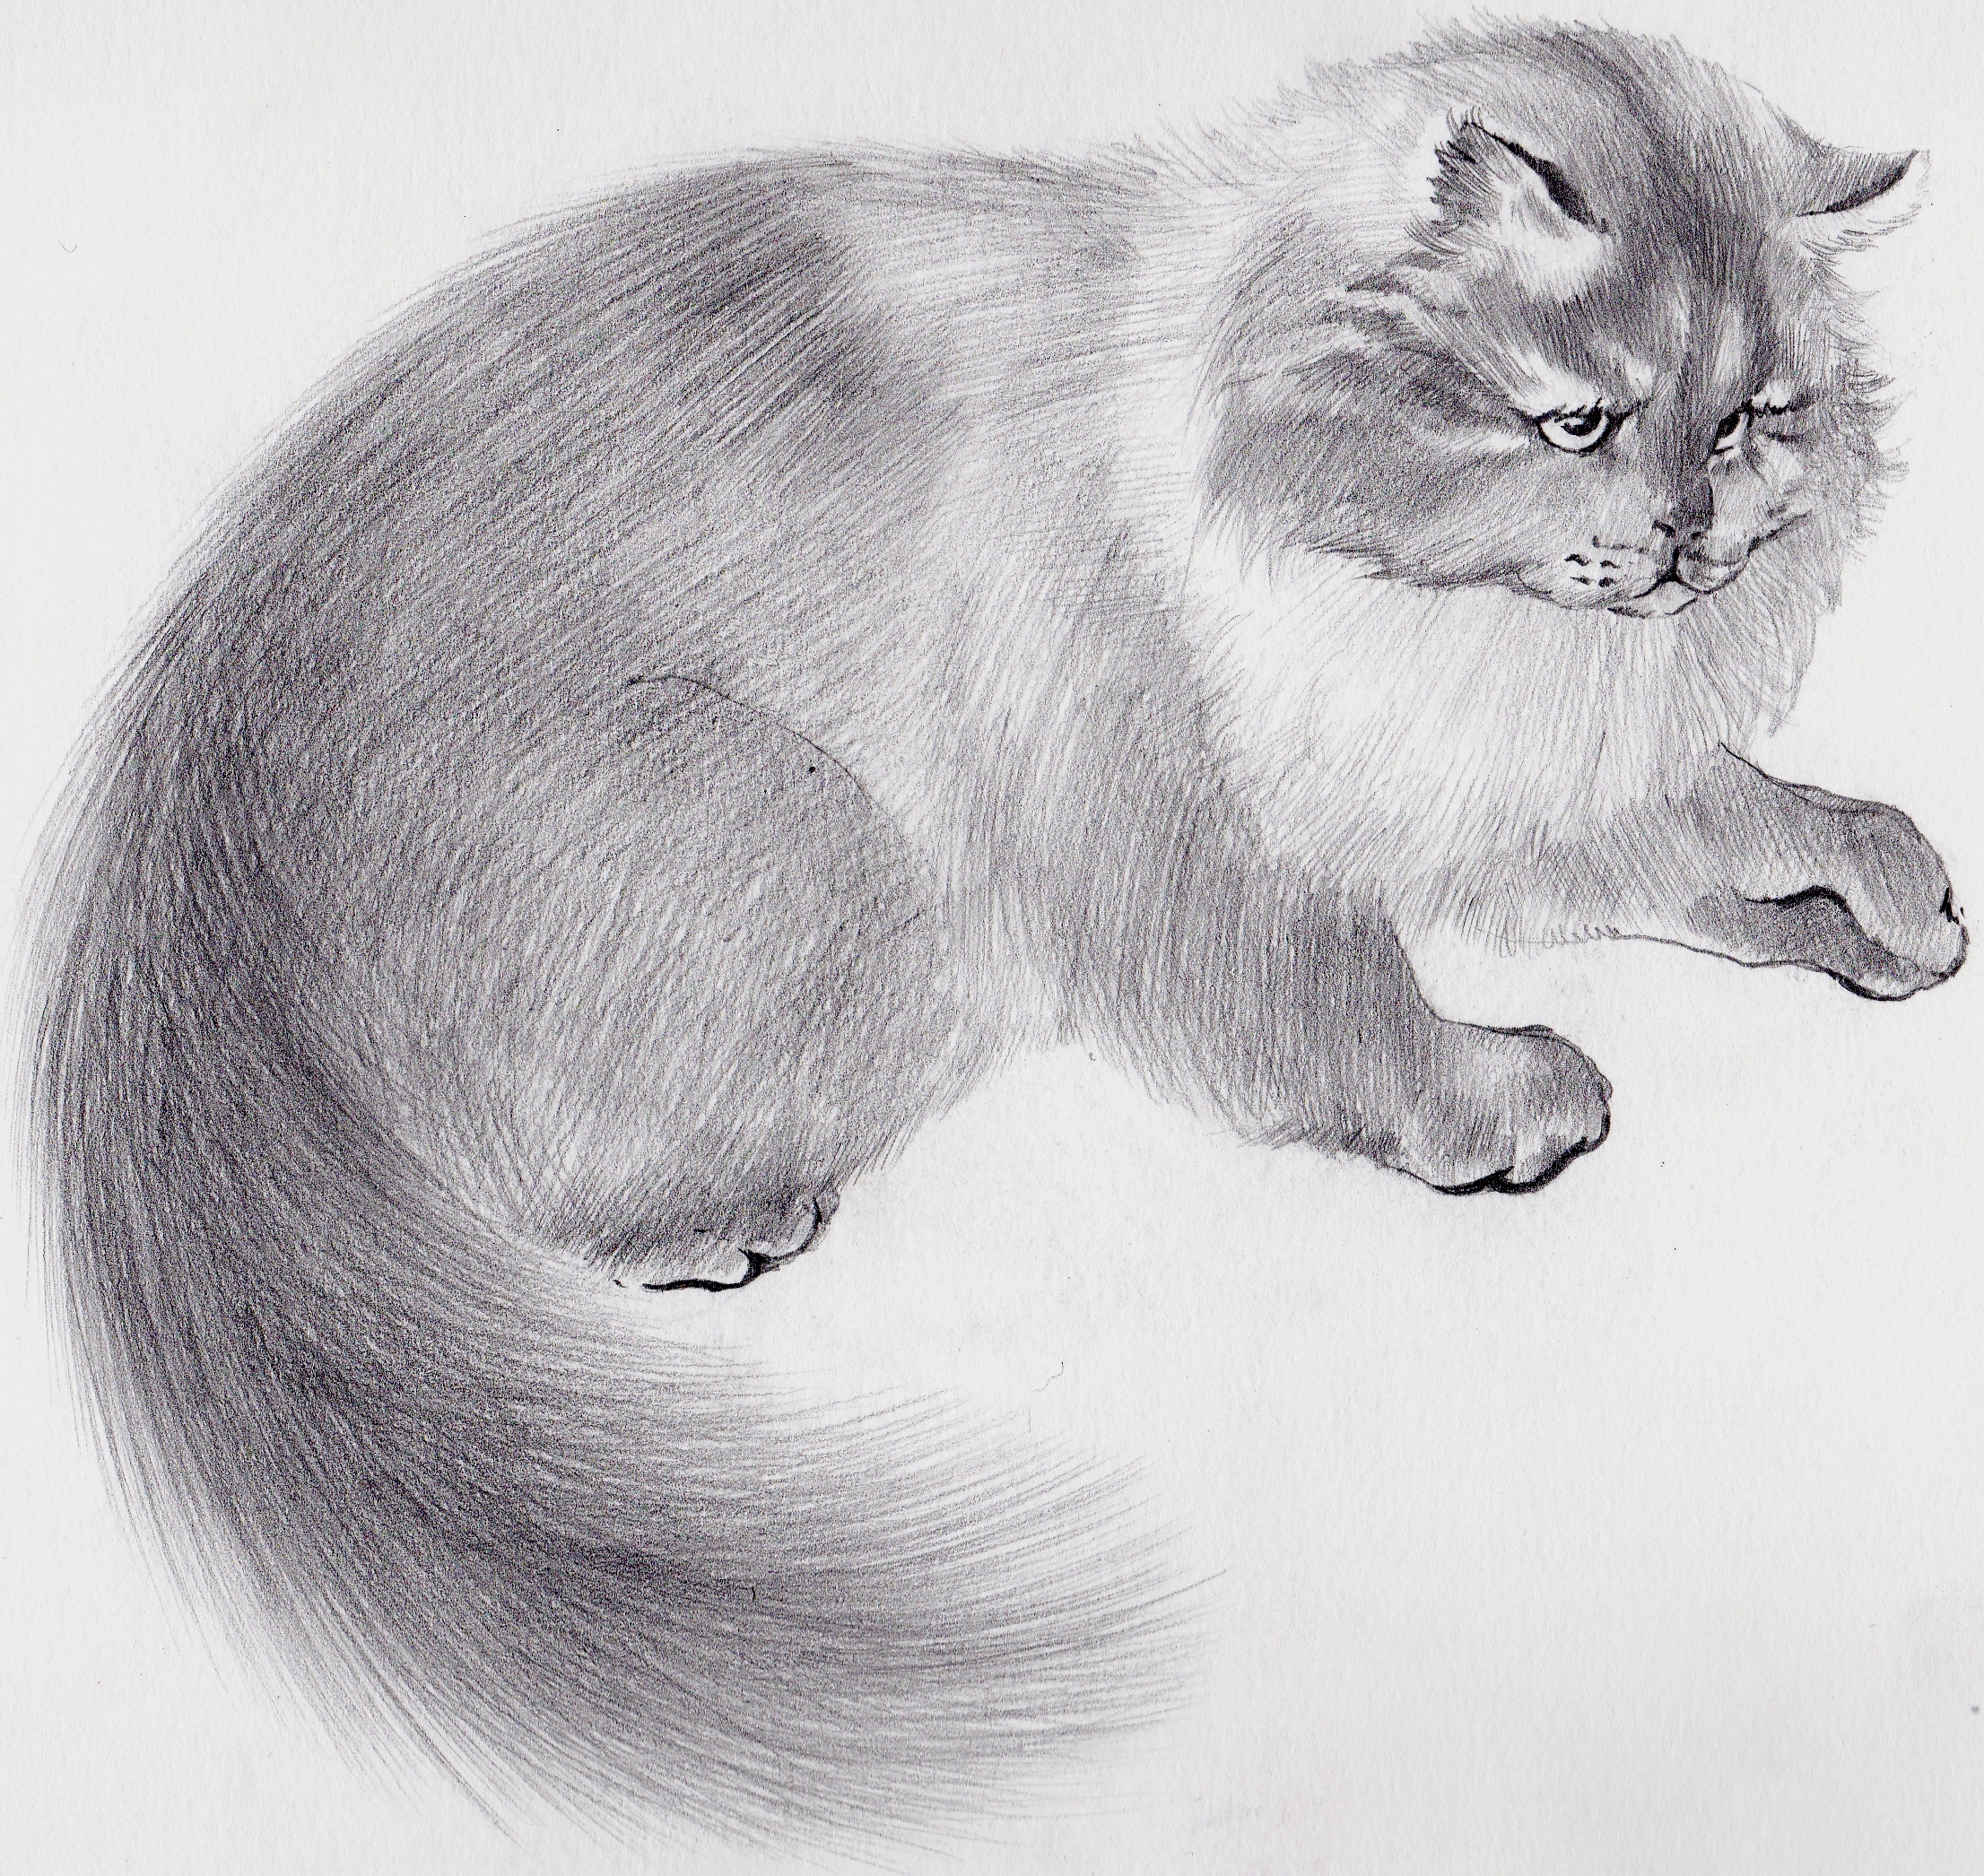 Иллюстрация кот карандашом в стиле 2d, академический рисунок,